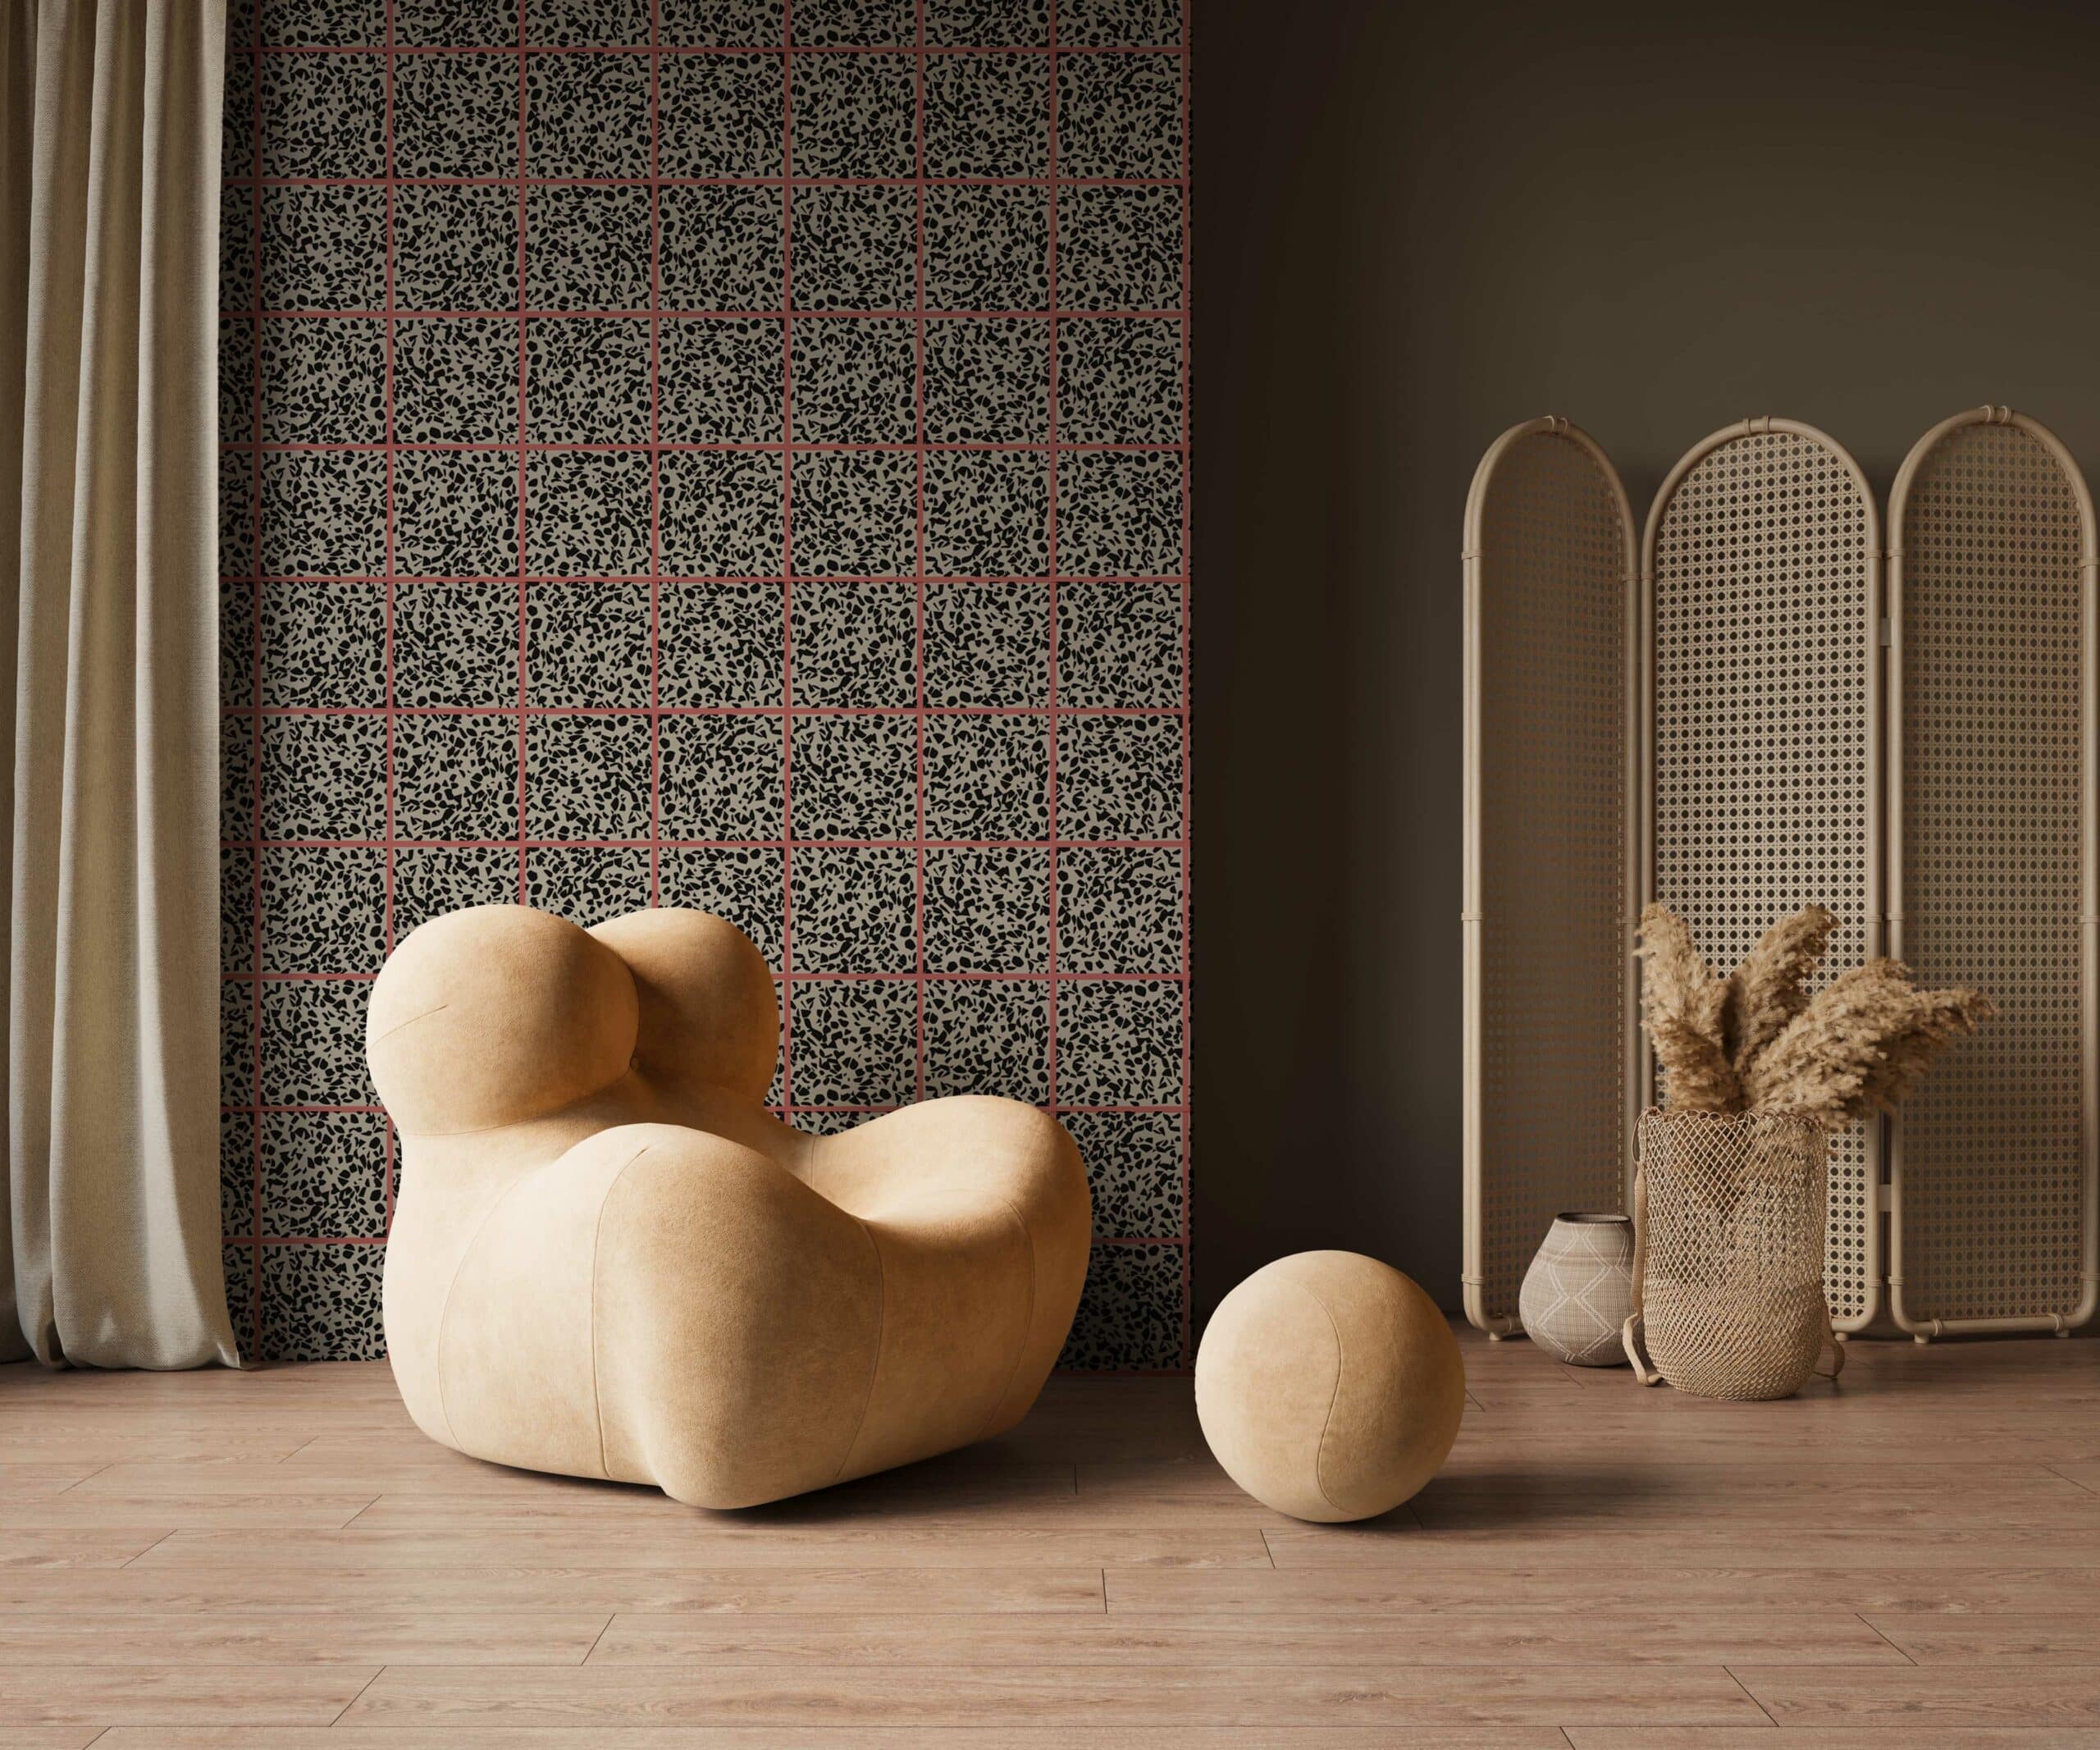 MaVoix-wallpaper-Fuga-fragola-by-Studio-Lievito-pattern-Collezione-Racconti-living-room